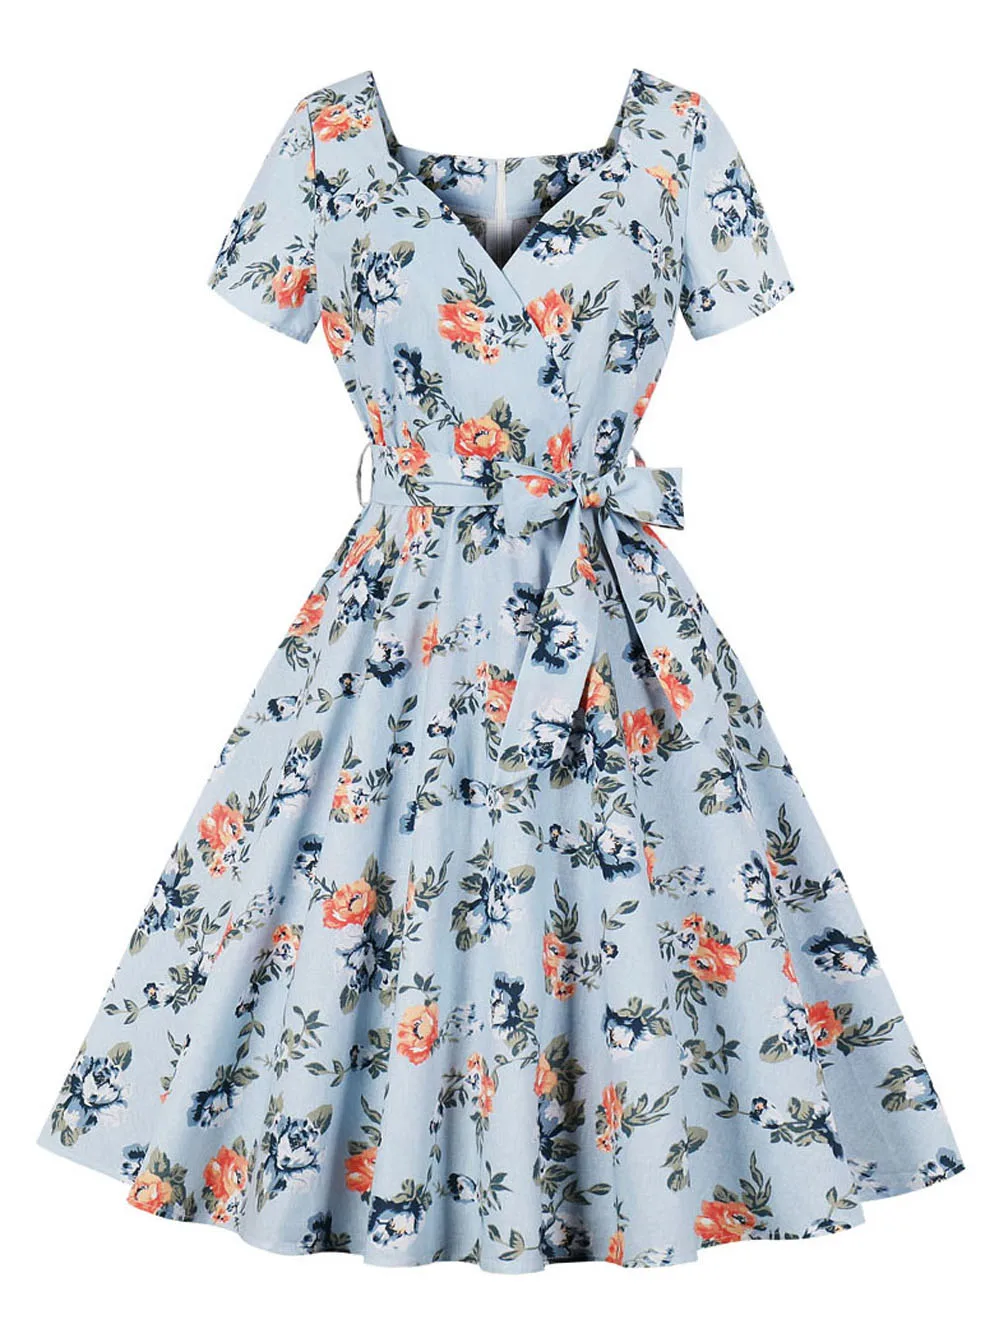 Joineles, цветочный принт, женское элегантное винтажное платье, 50 s, рокабилли, халат, лето, v-образный вырез, короткий рукав, высокая талия, Ретро стиль, платья, хлопок - Цвет: Blue